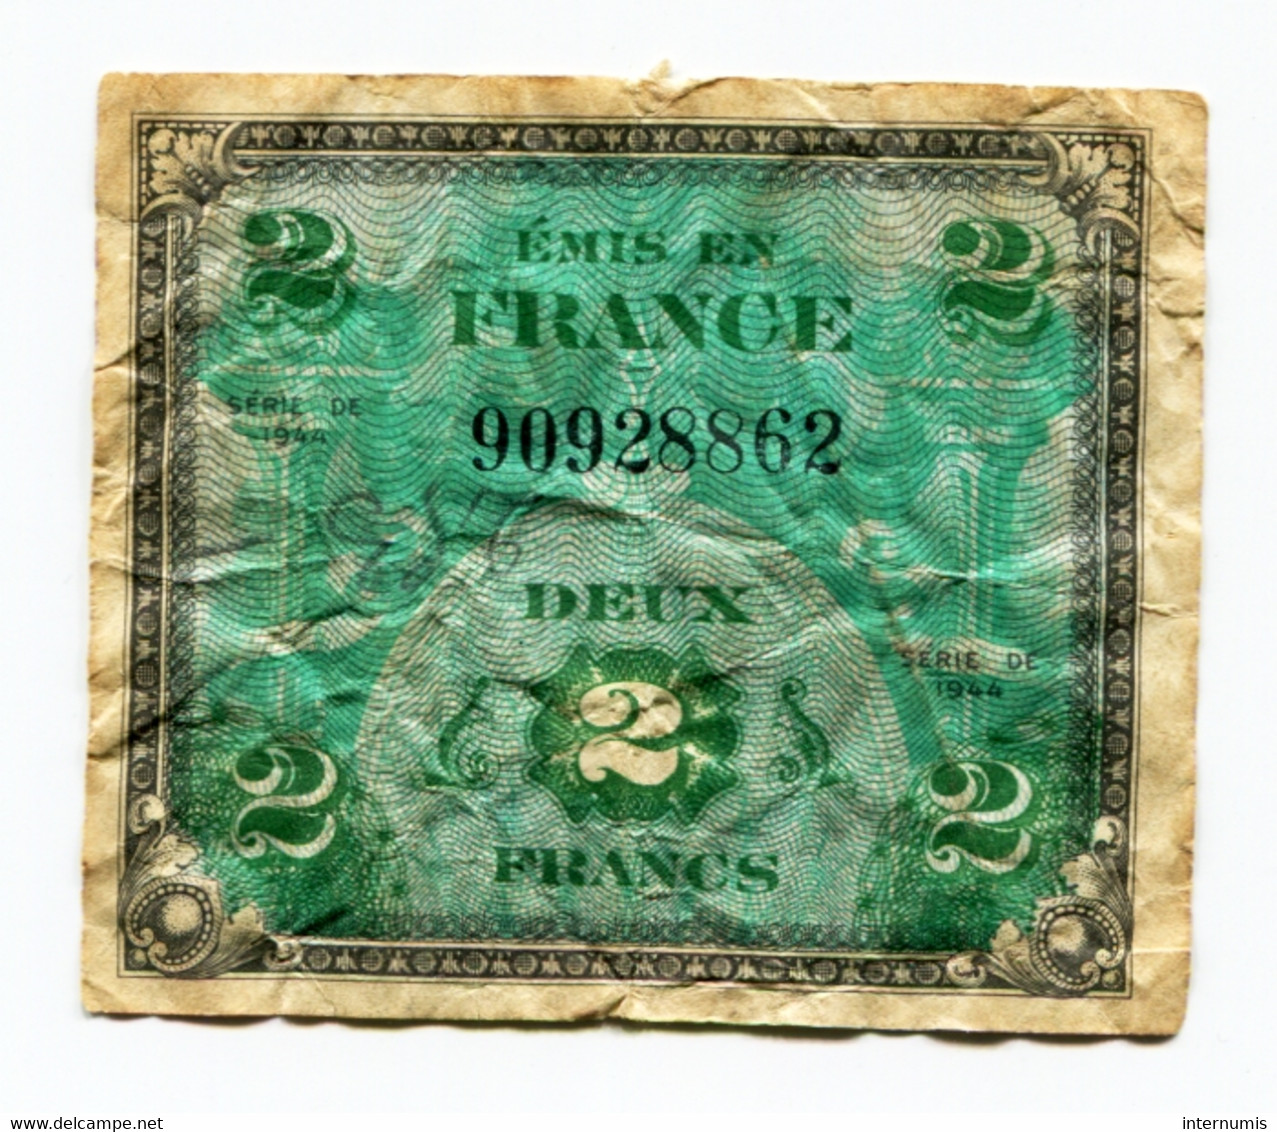 France, 2 Francs, DRAPEAU Sans Série, TYPE DE 1944, N° : 90928862, B (VG), VF.16.01 - 1944 Drapeau/France